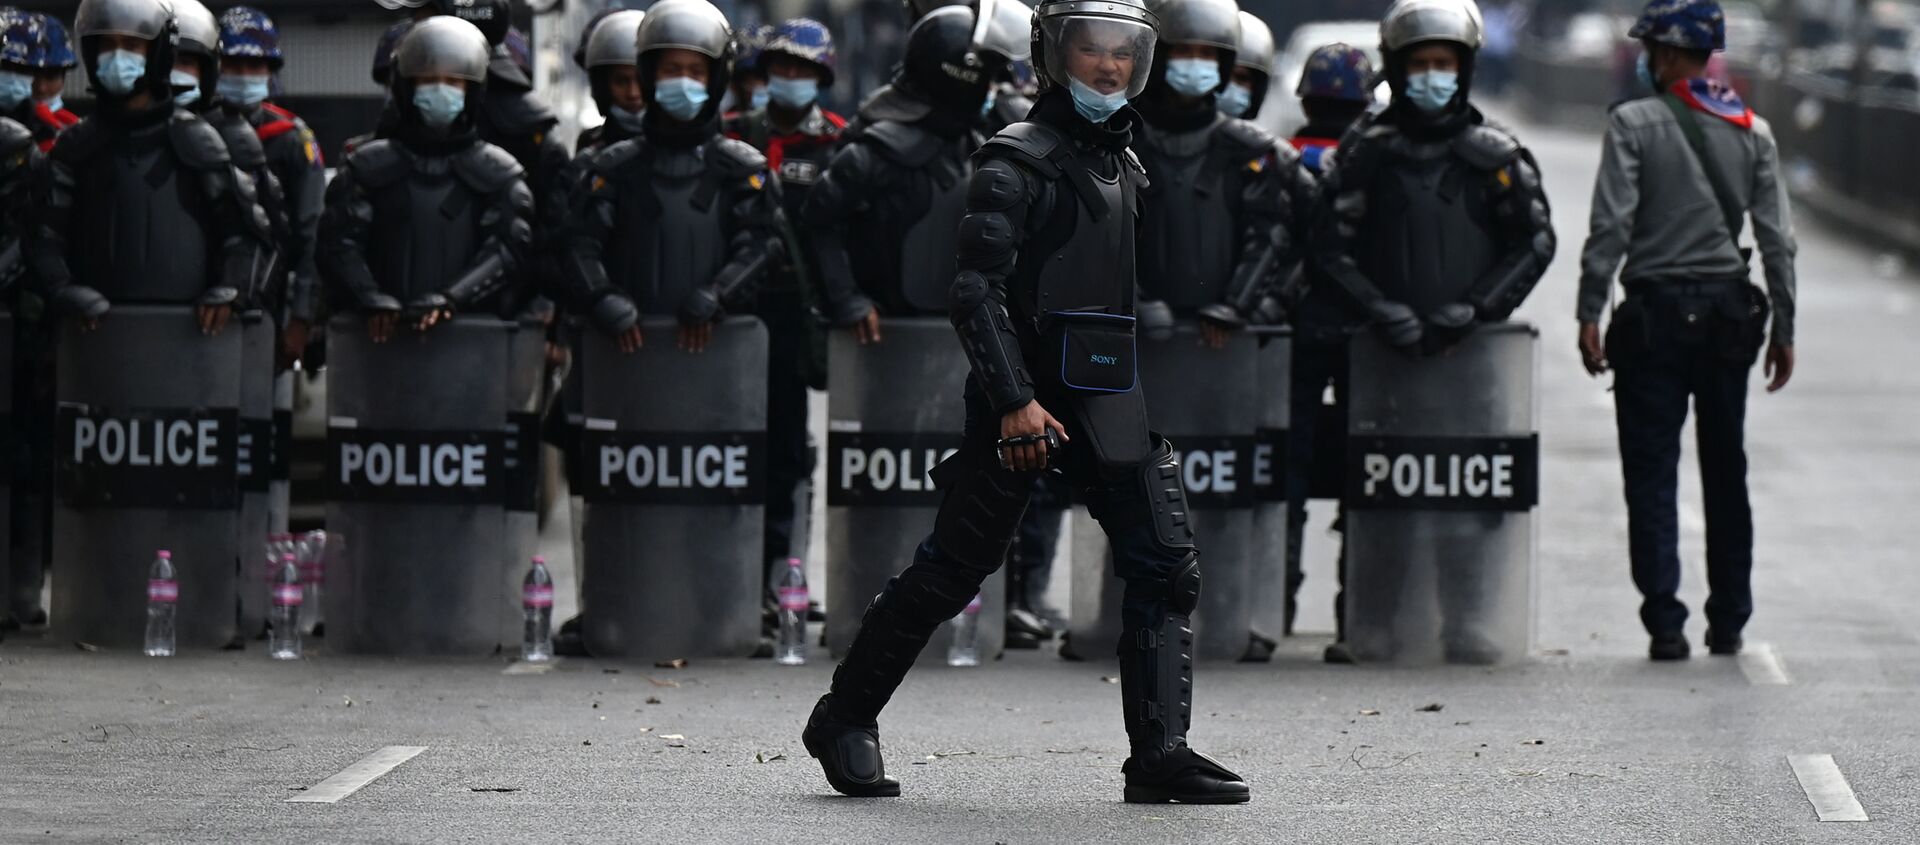 Cảnh sát trong cuộc biểu tình chống lại một cuộc đảo chính quân sự ở Myanmar. - Sputnik Việt Nam, 1920, 05.03.2021